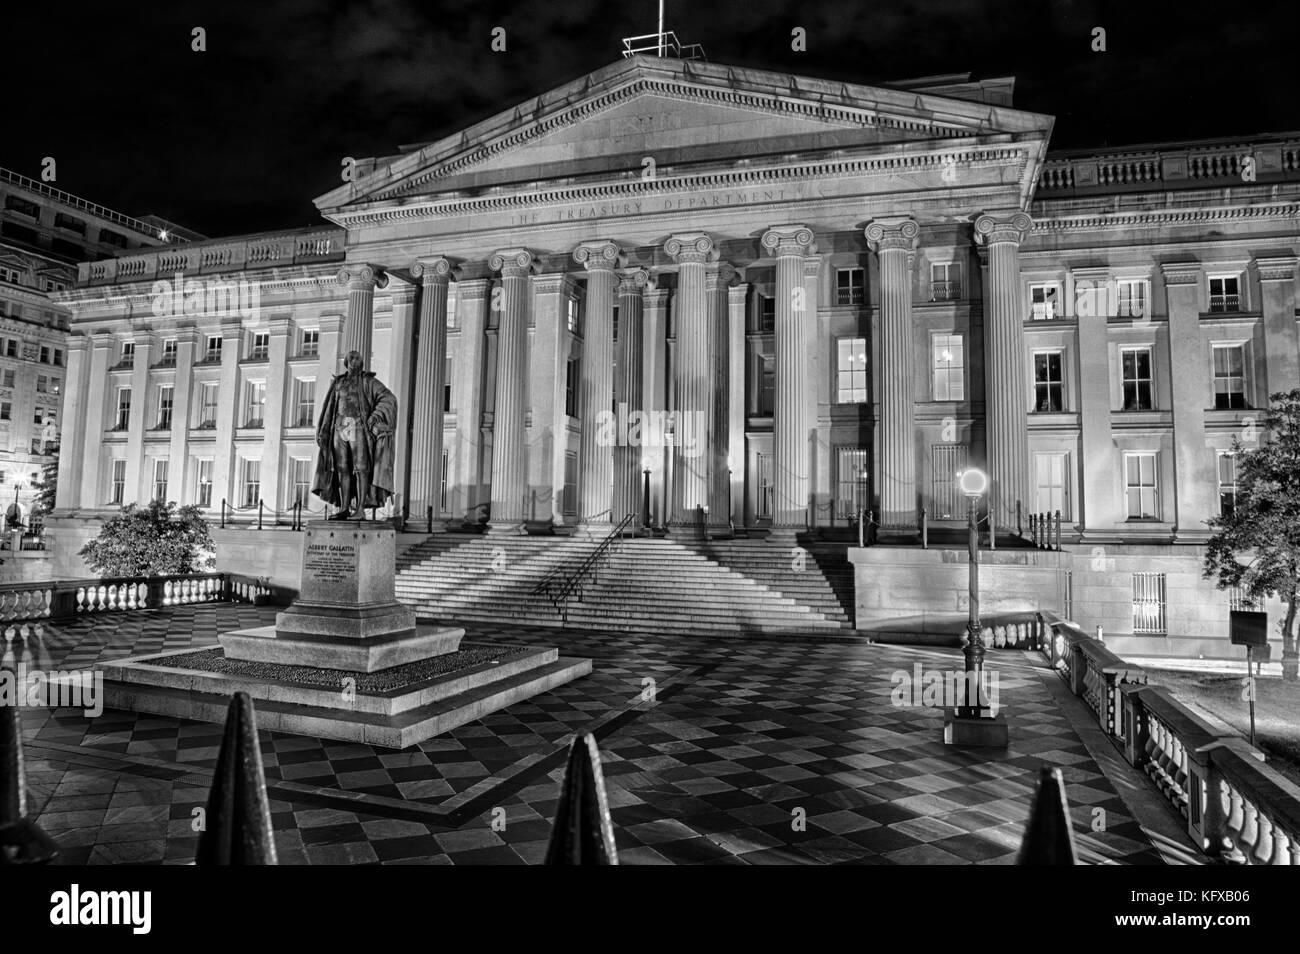 September 12, 2017, Washington, Dc, USA: das US-Finanzministerium Gebäude nachts beleuchtet mit der Statue von gallatin prominent vor. Stockfoto